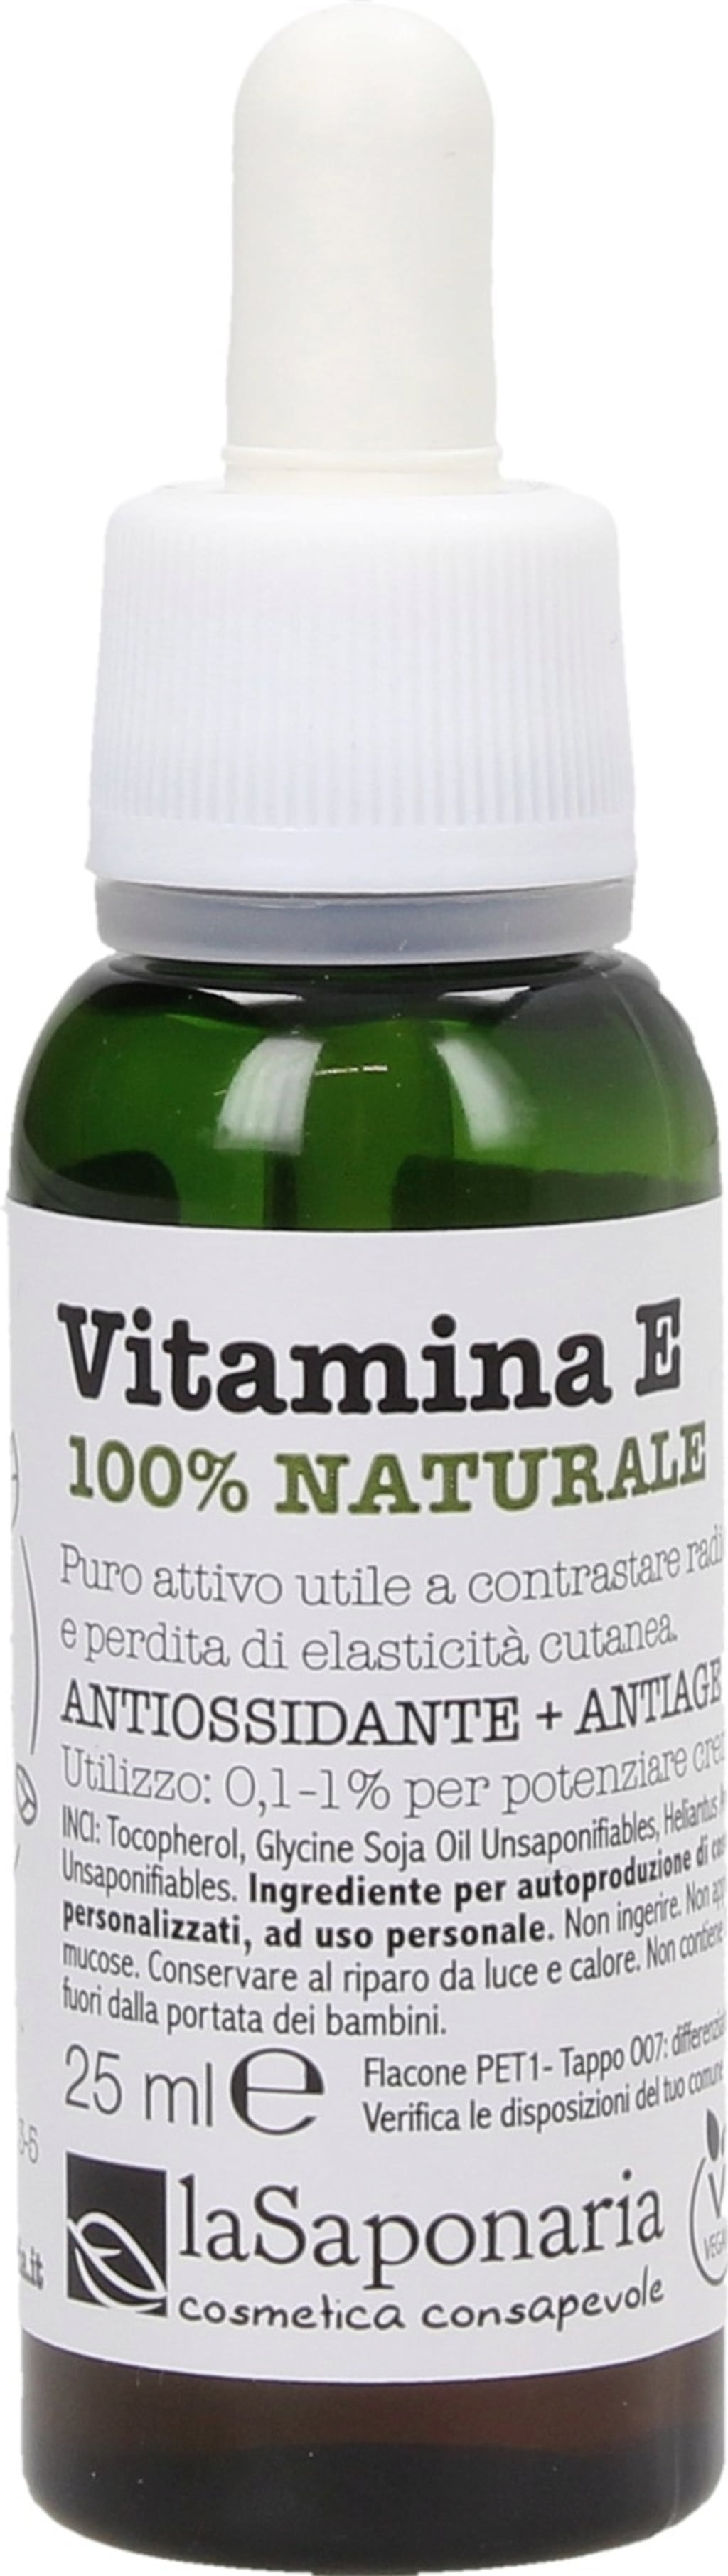 La Saponaria Vitamina E - 25 ml